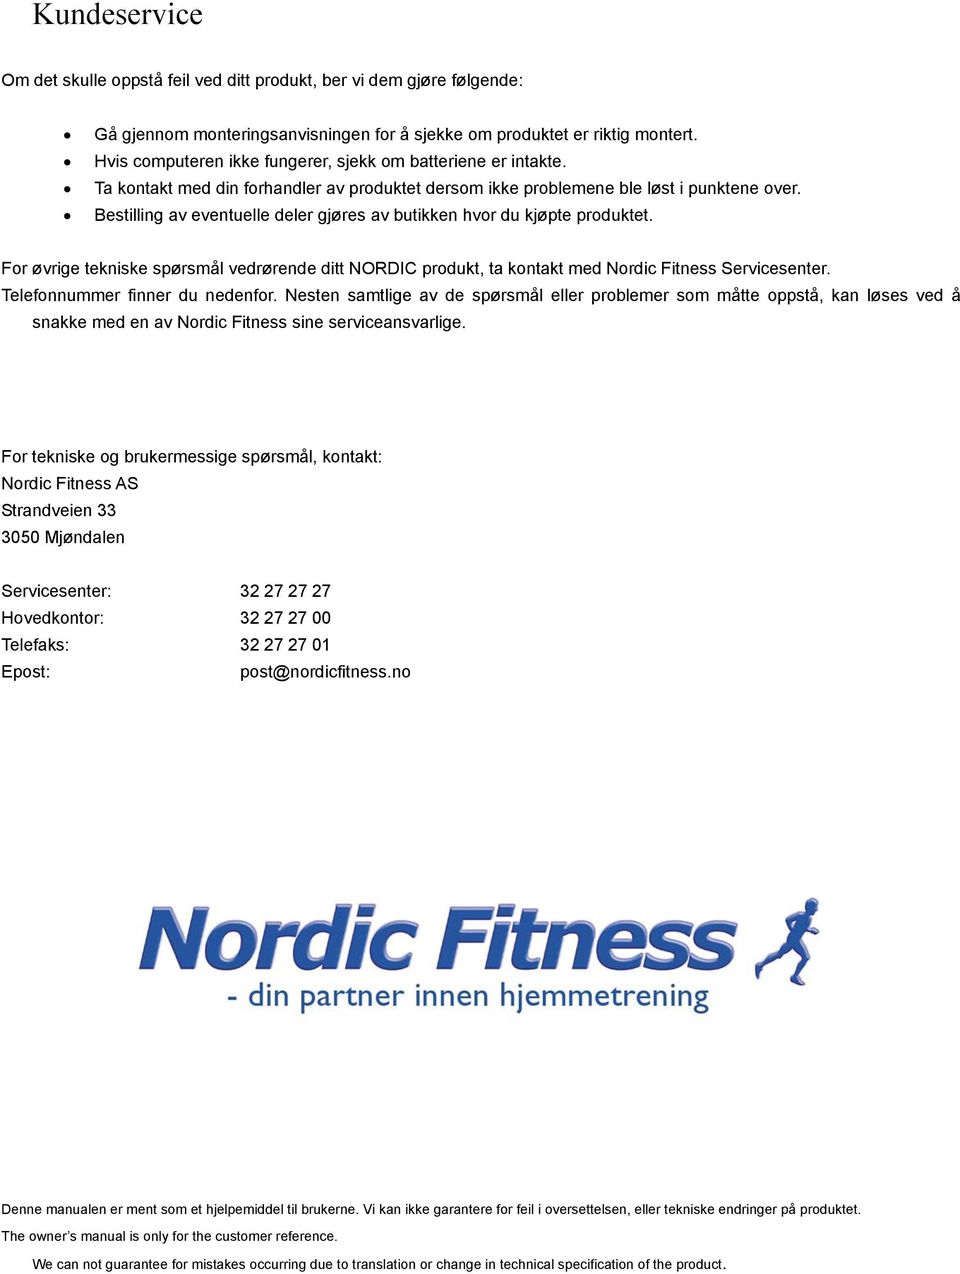 Bestilling av eventuelle deler gjøres av butikken hvor du kjøpte produktet. For øvrige tekniske spørsmål vedrørende ditt NORDIC produkt, ta kontakt med Nordic Fitness Servicesenter.